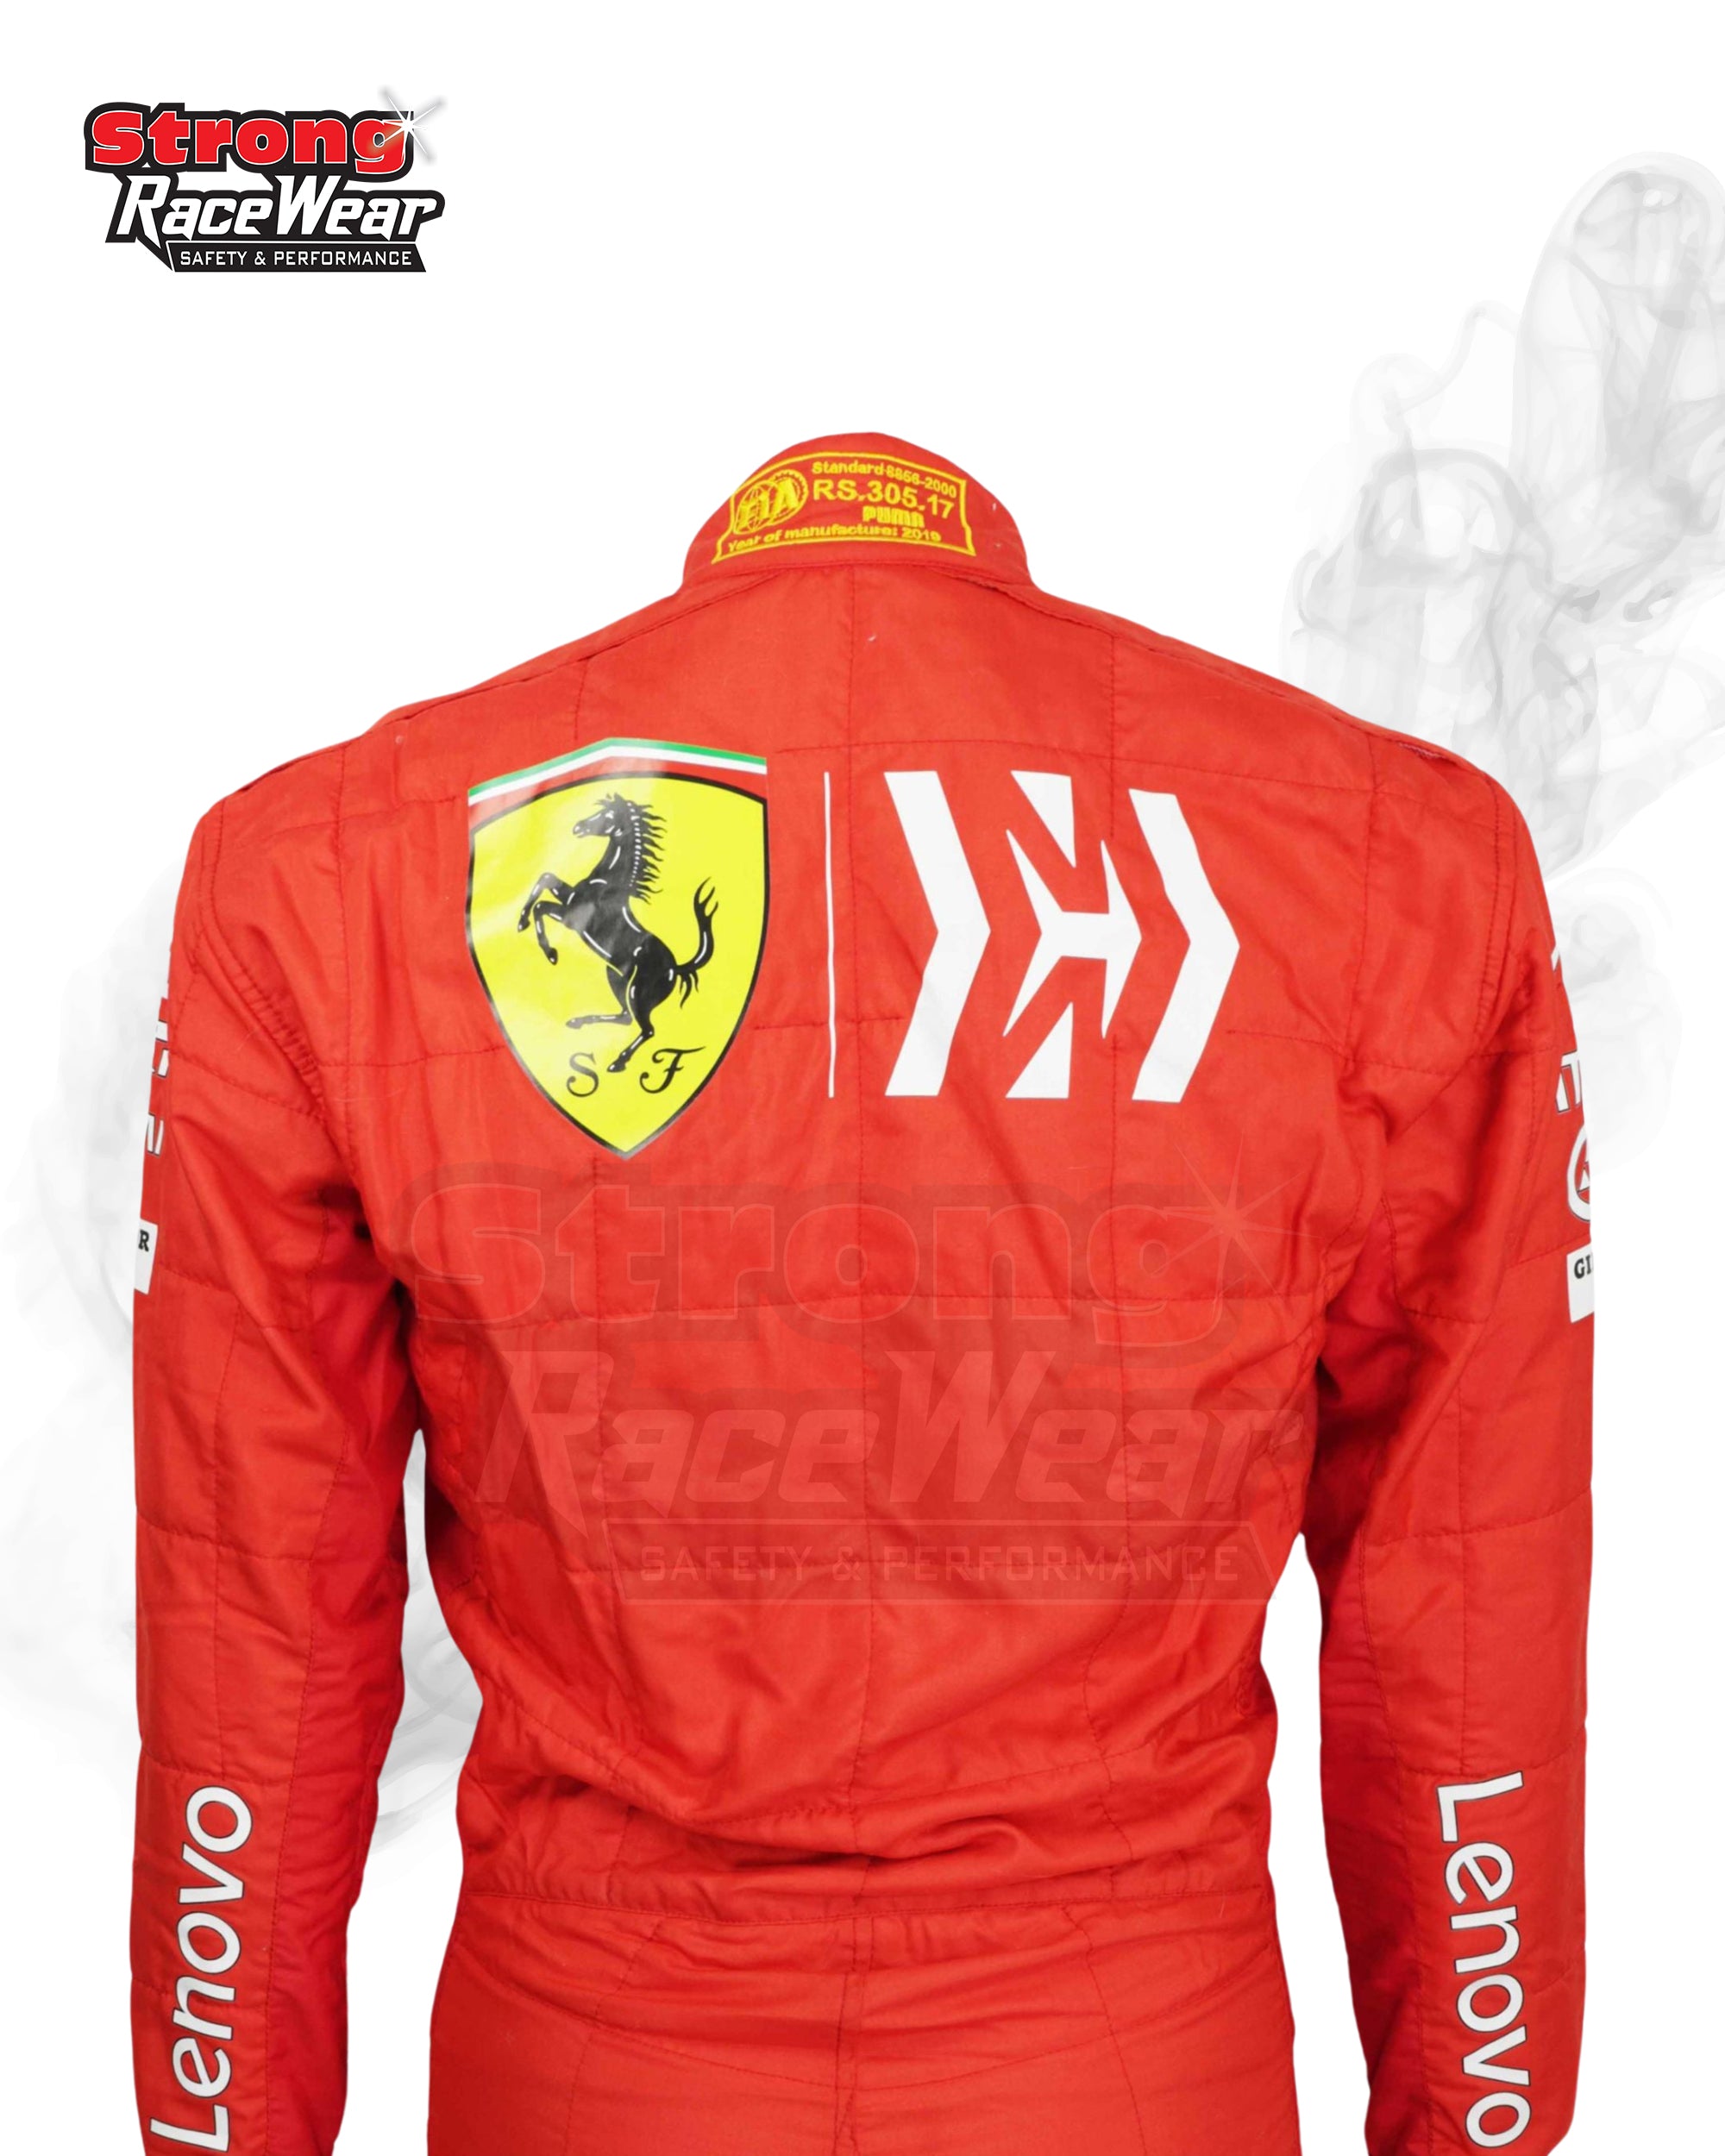 Charles Leclerc 2019 Ferrari Race Suit